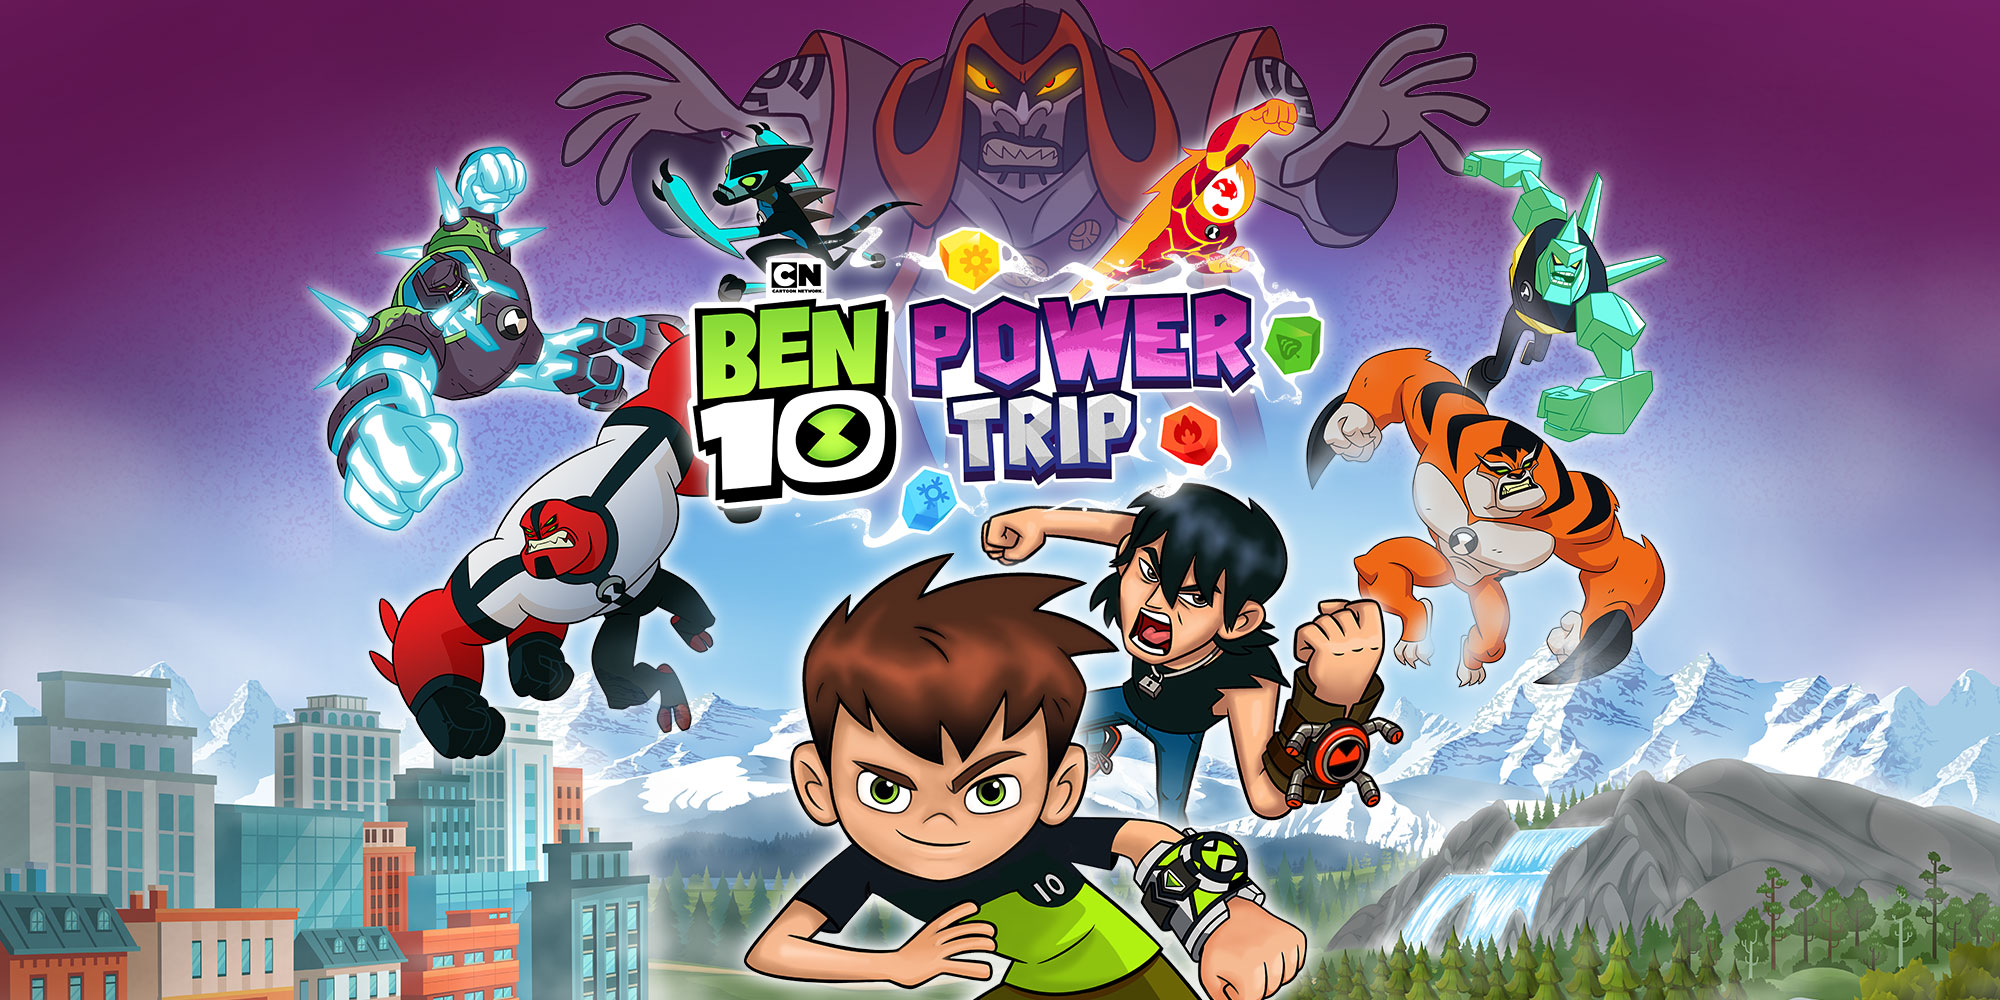 Ben 10 - Surge o Poder, Jogos de Ben 10